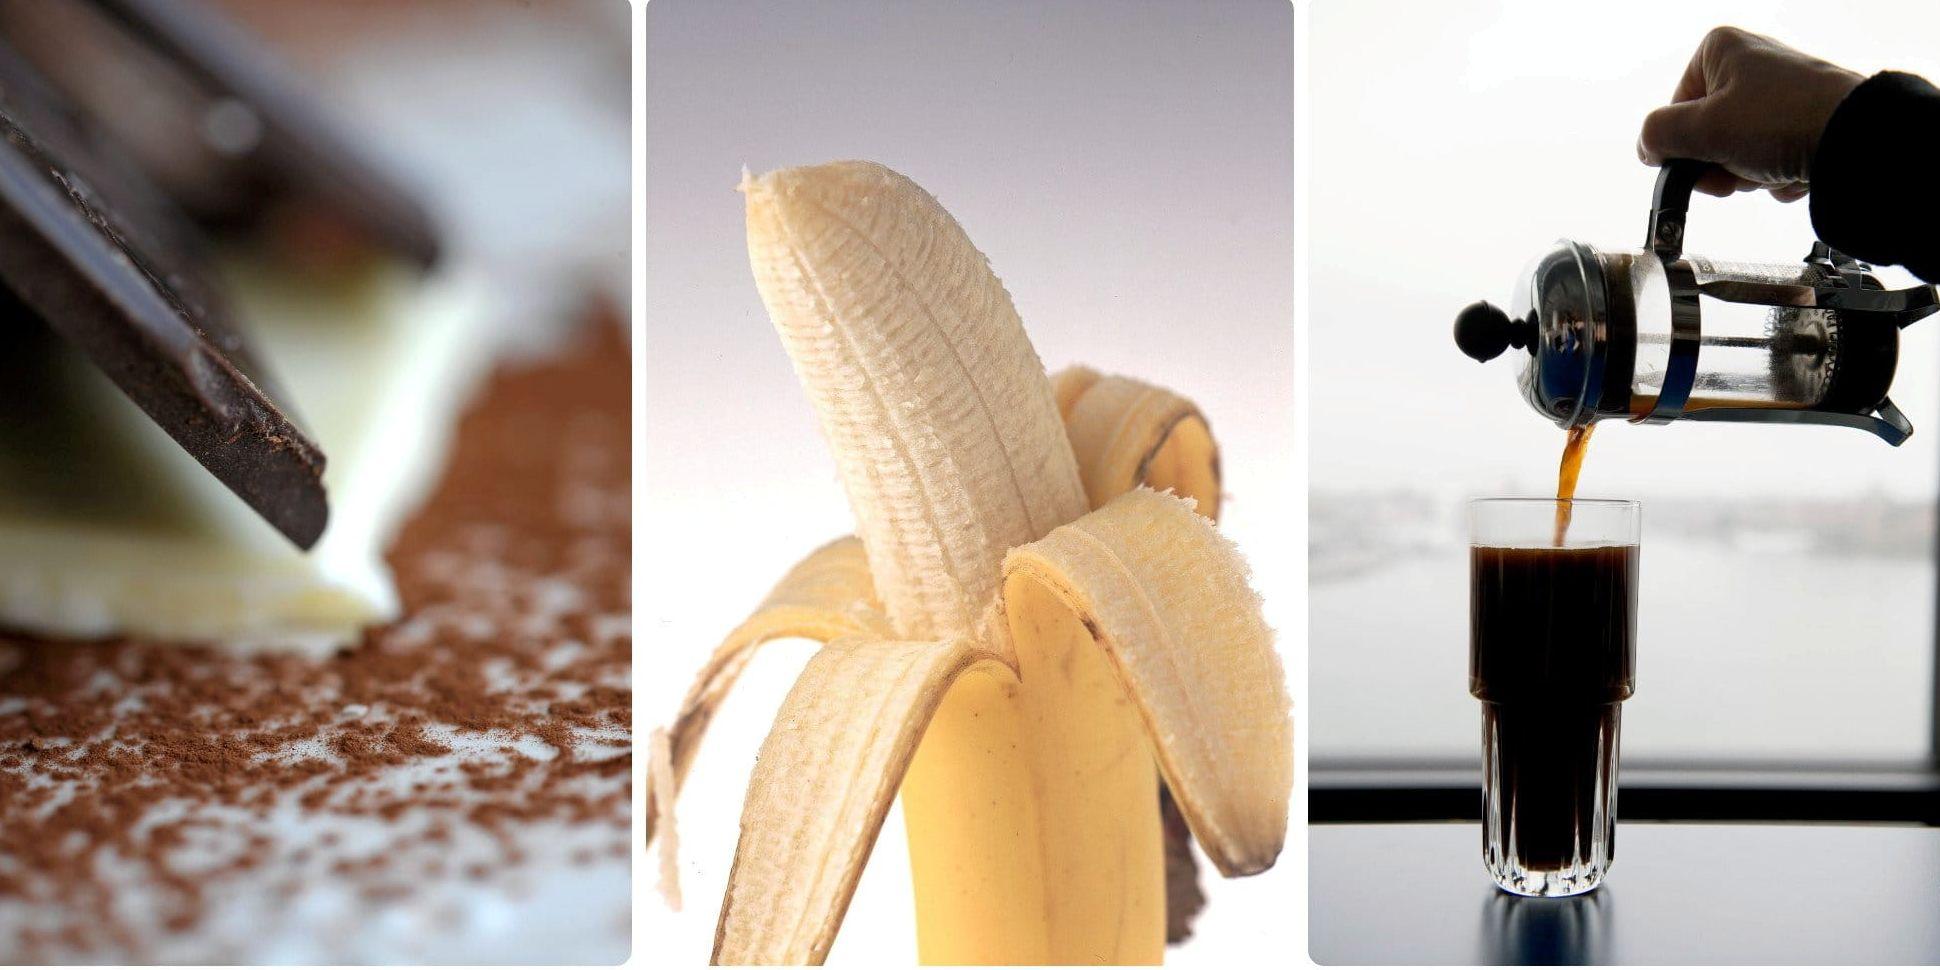 Att välja rätt bland bara dessa tre produkter har en enorm betydelse, menar skribenten om choklad, bananer och kaffe.